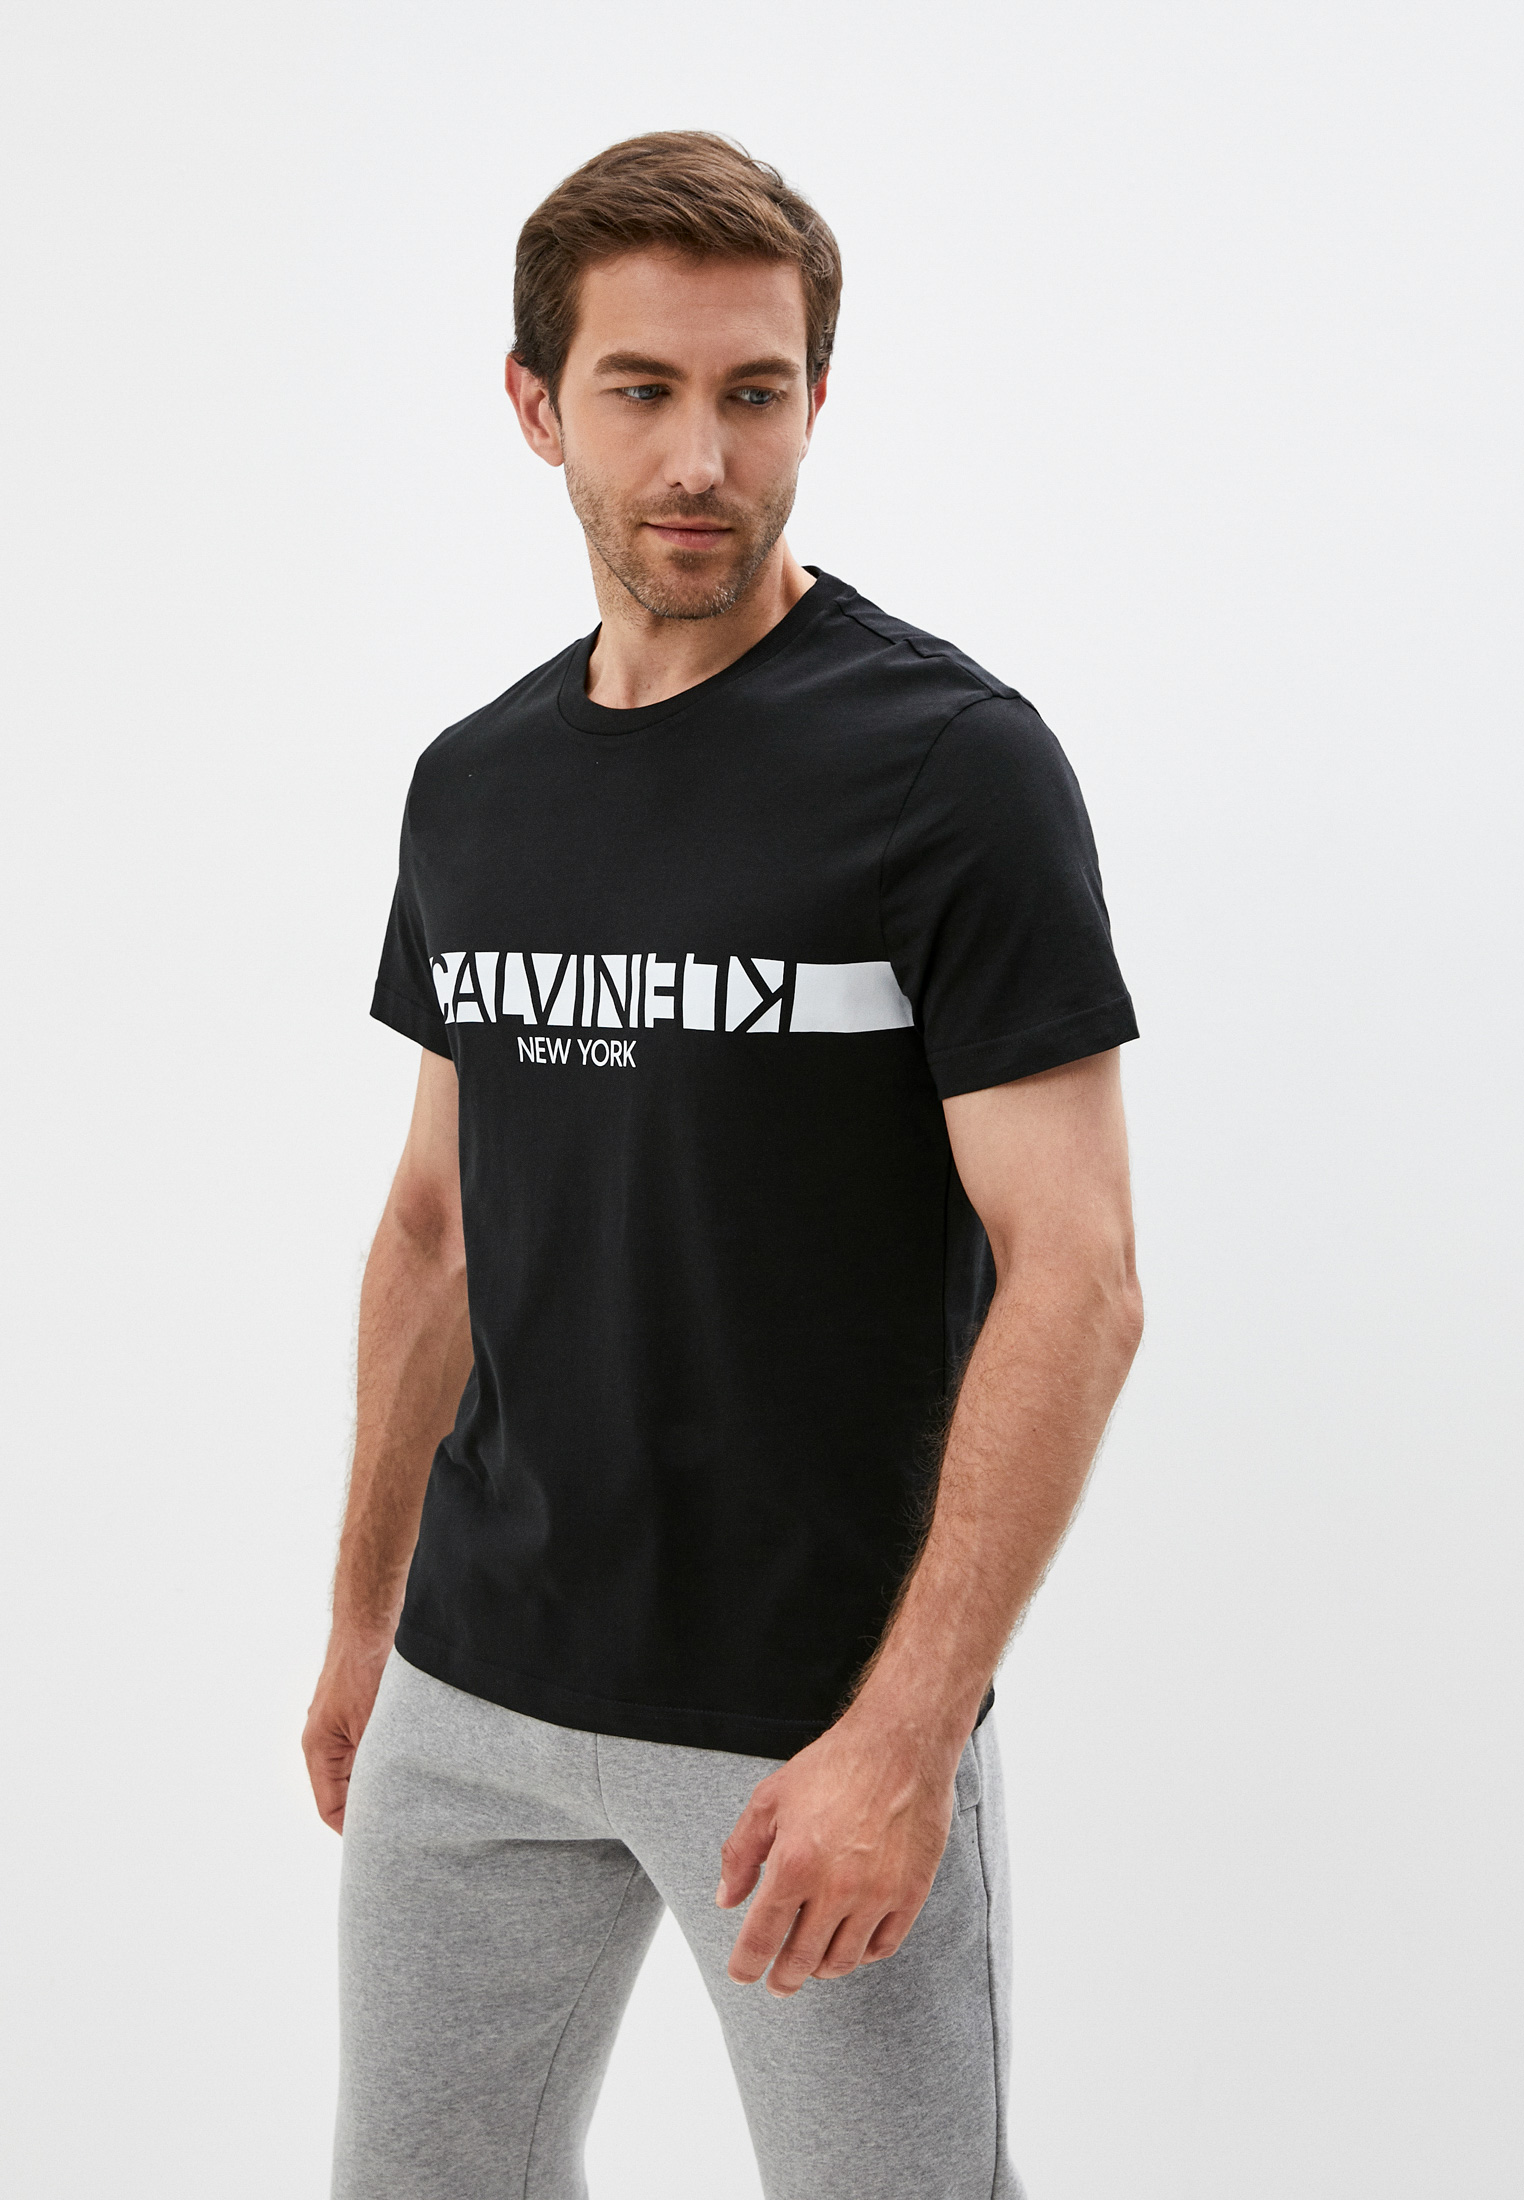 Мужская футболка Calvin Klein (Кельвин Кляйн) K10K107124: изображение 1